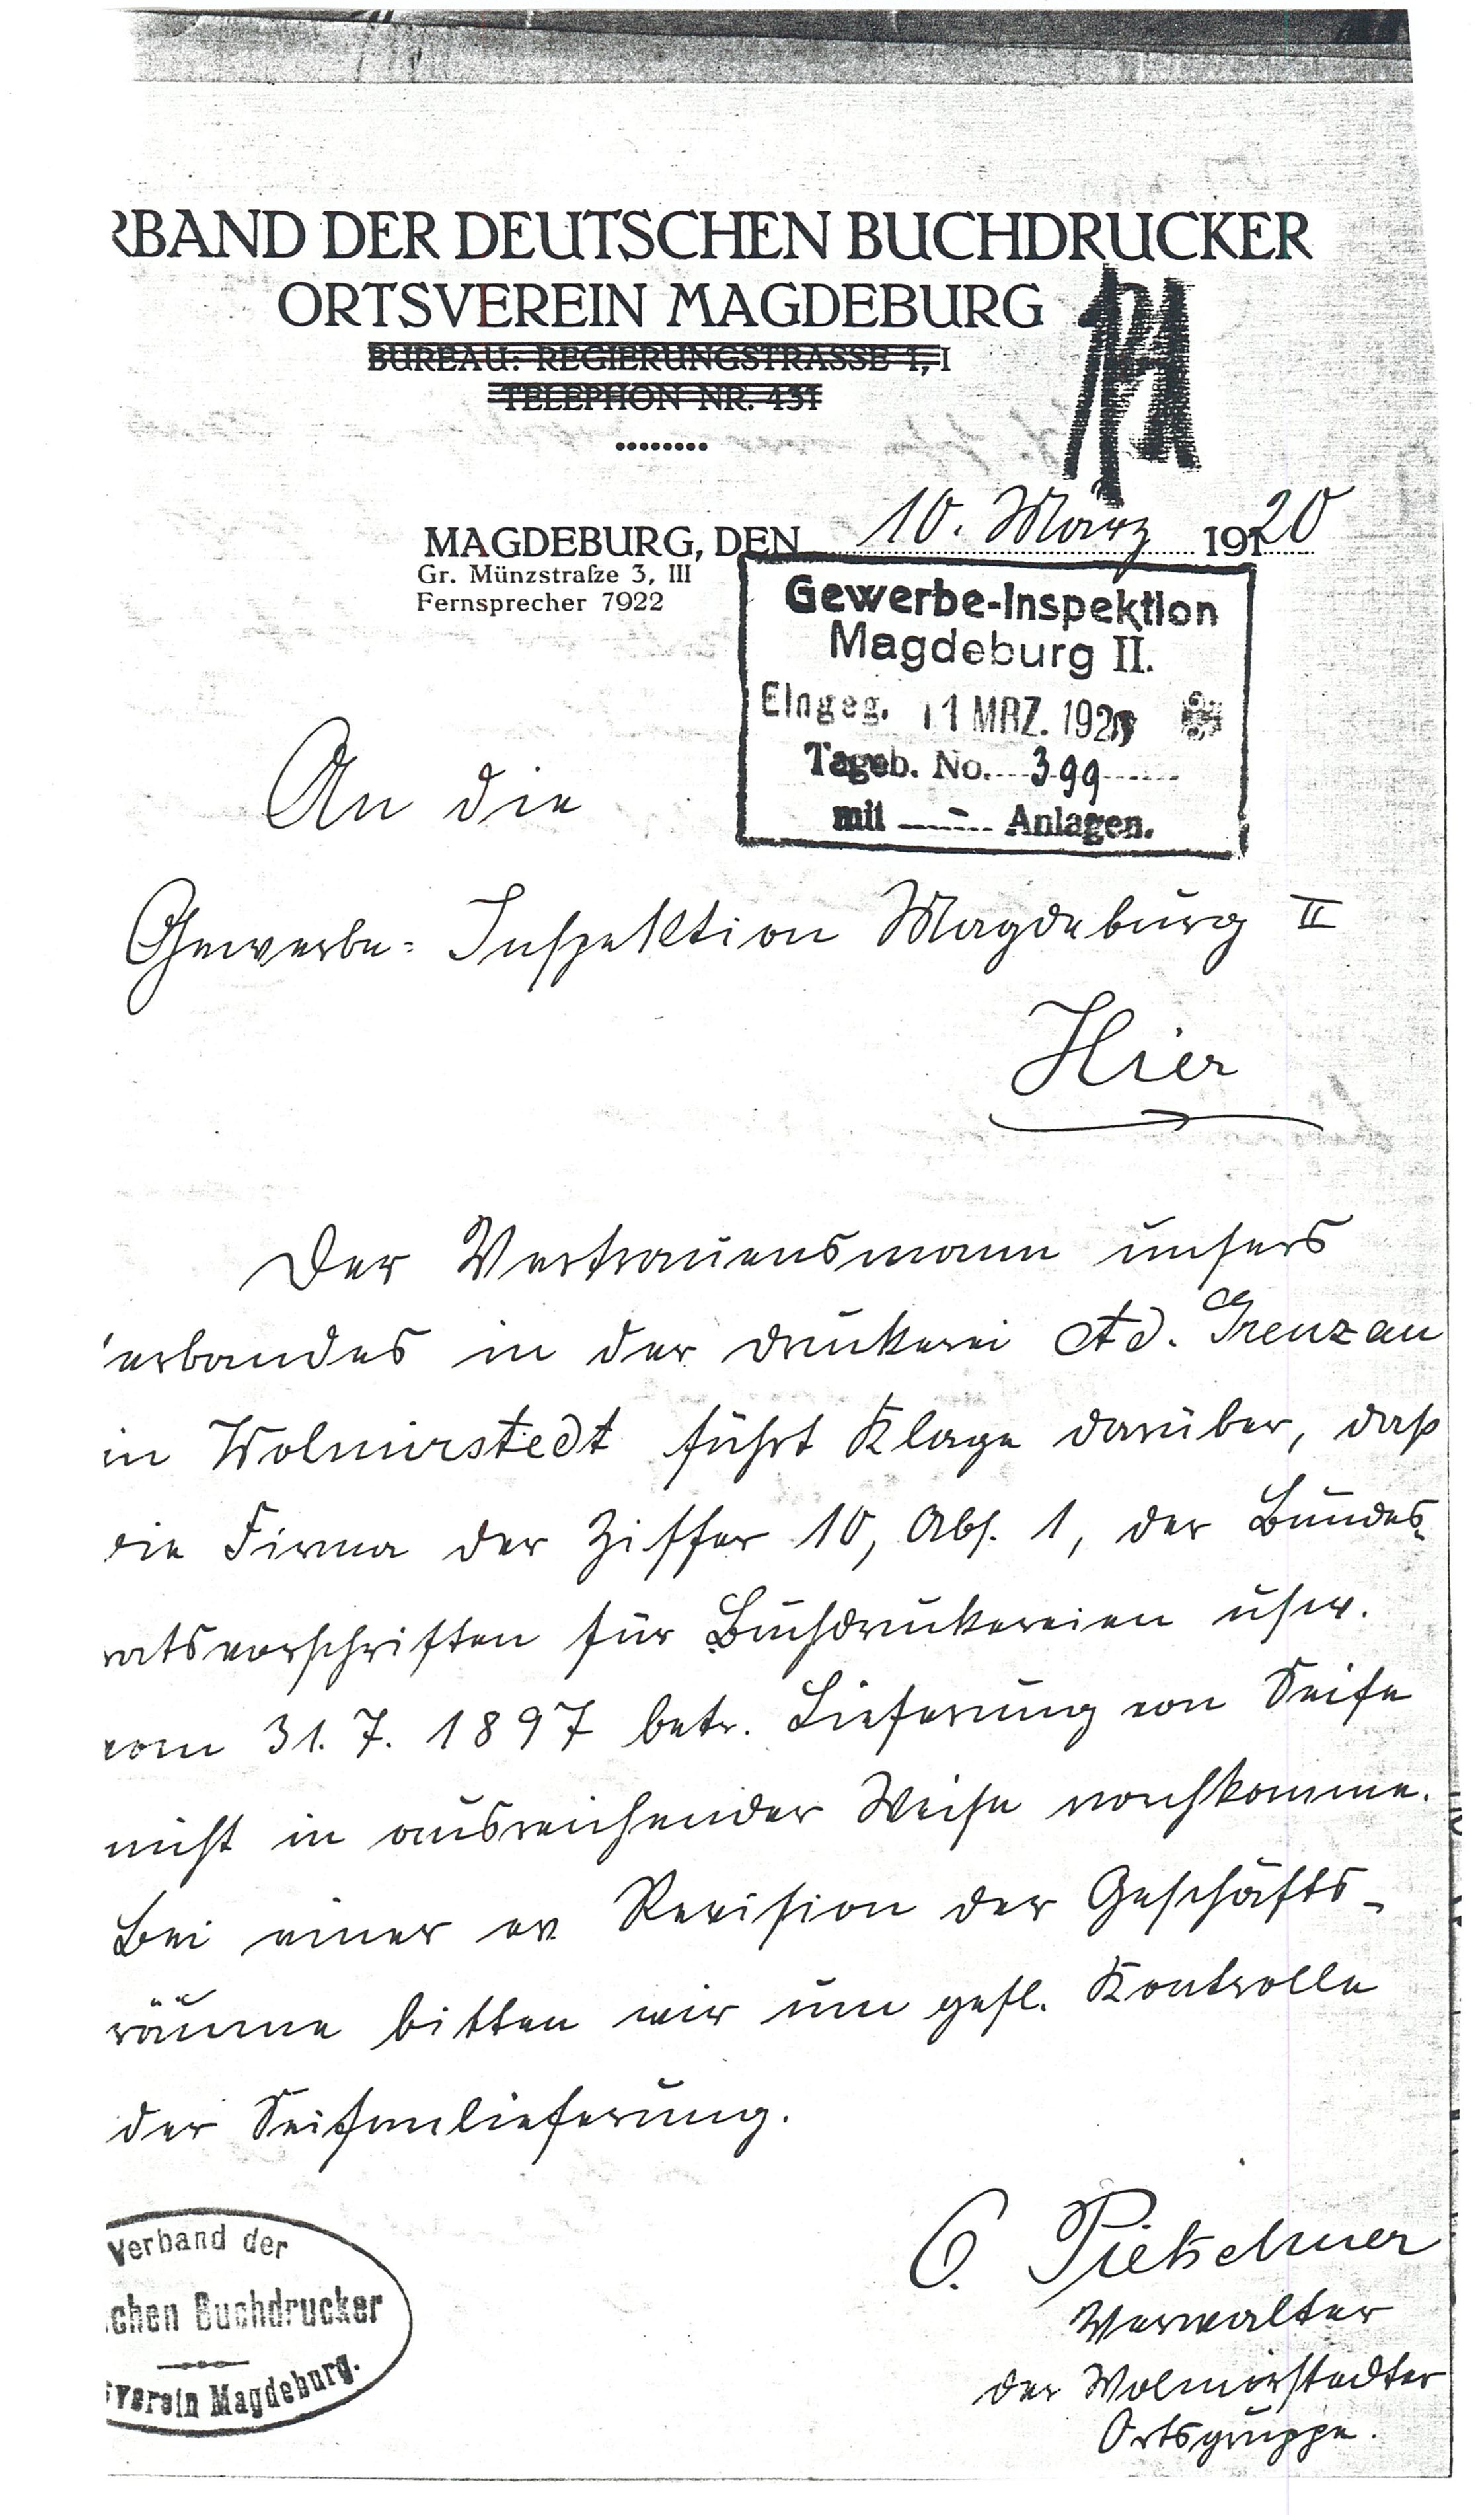 Schreiben Druckerei Grenzau -  An d. Gewerbeinspektion - 10.03.1920 (Museum Wolmirstedt RR-F)